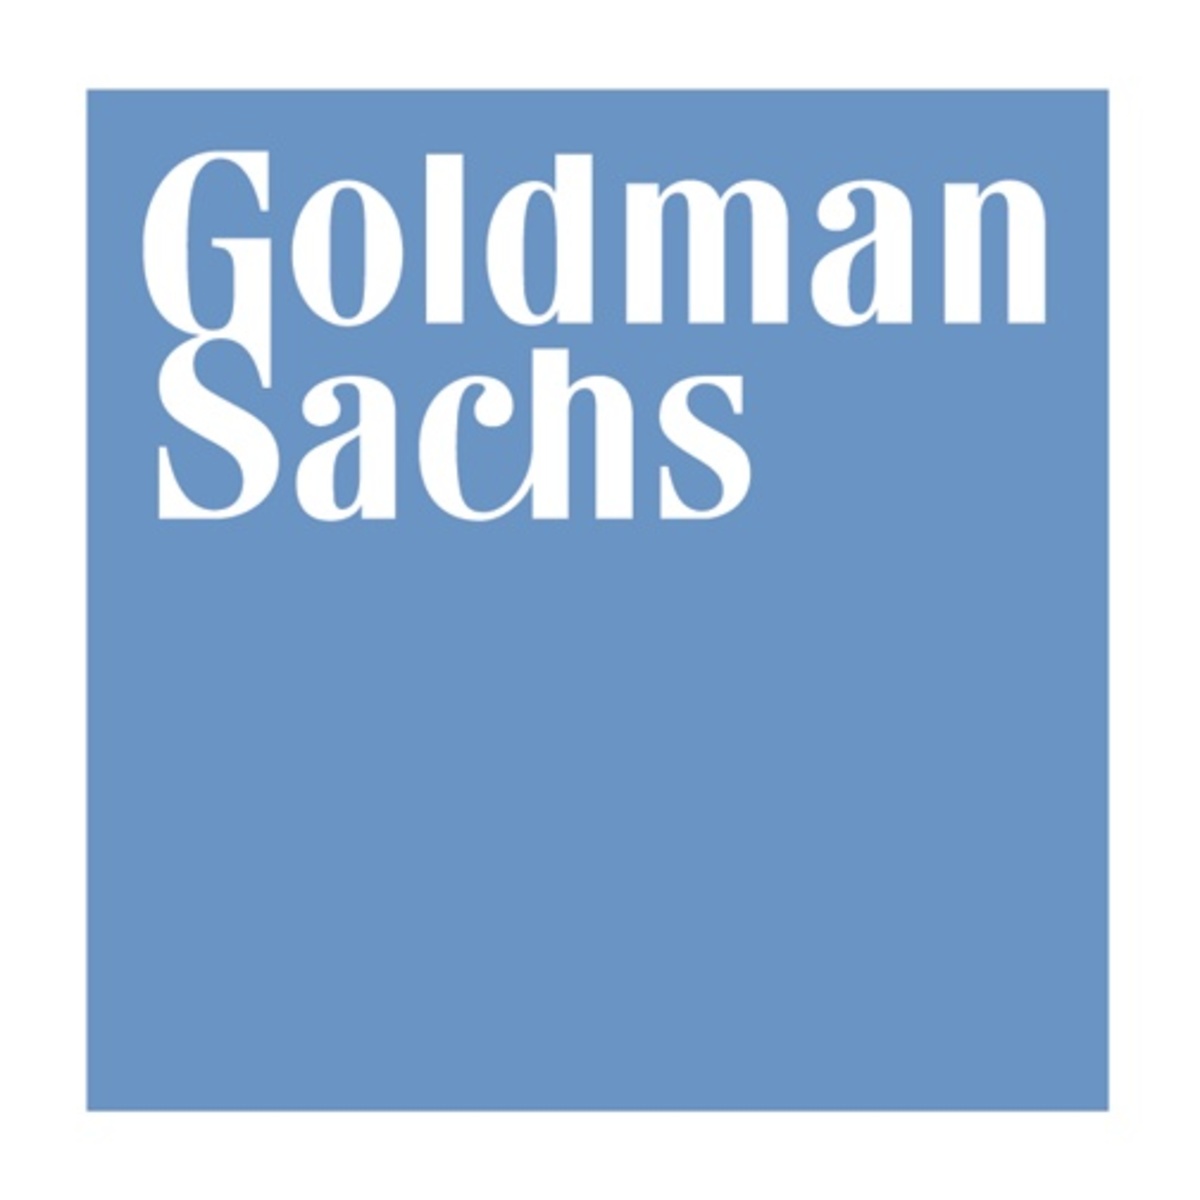 Με το γράμμα του νόμου οι συναλλαγές Ελλάδας – Goldman Sachs